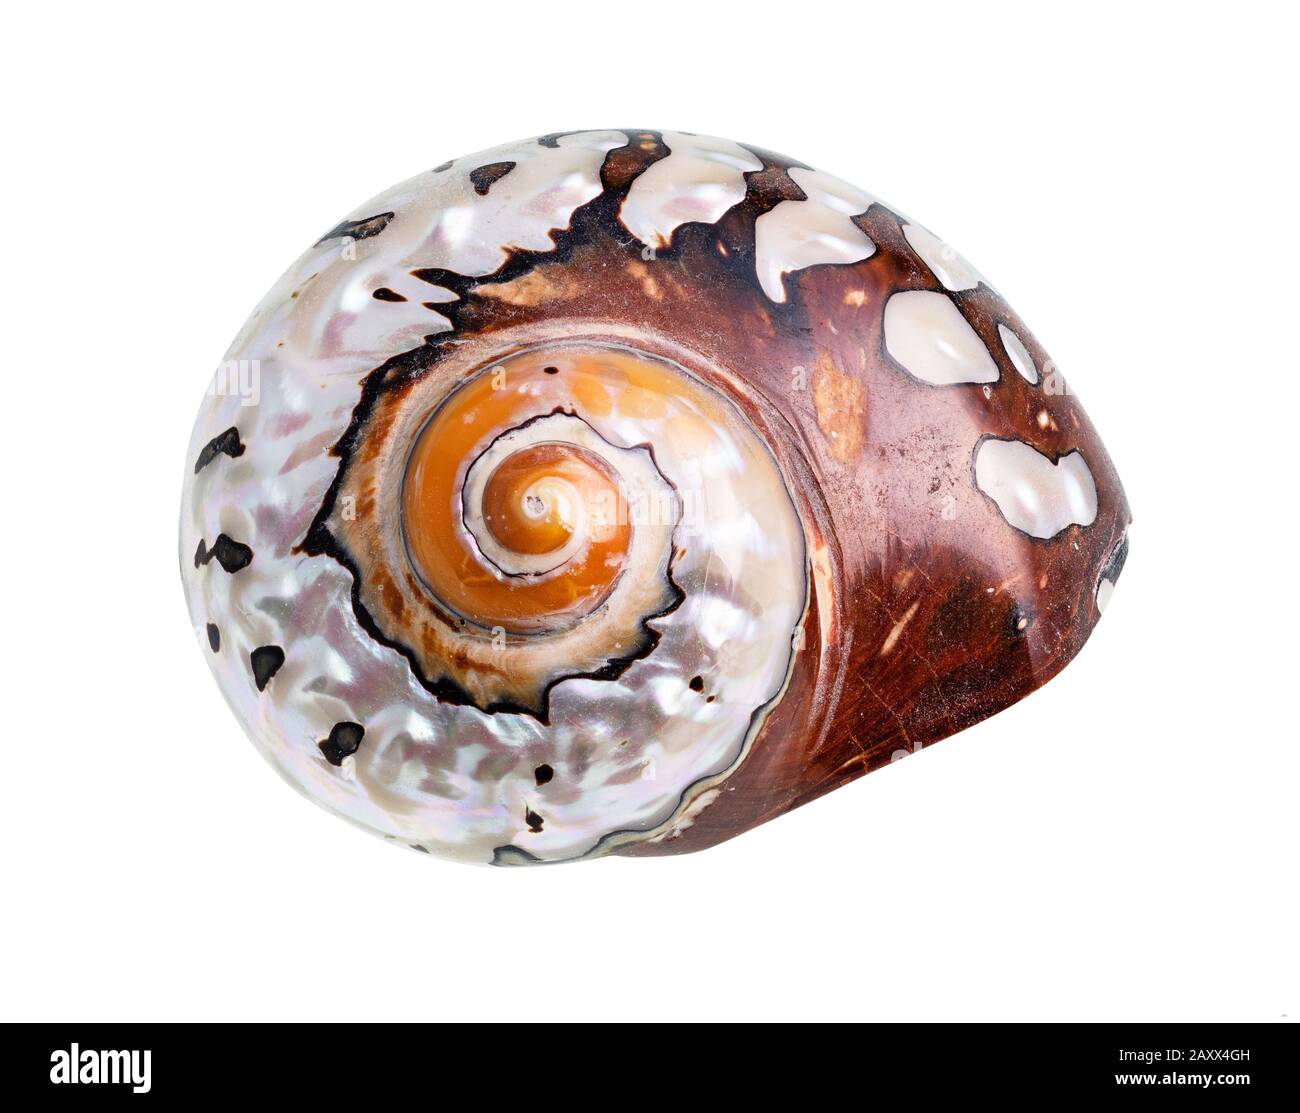 conch séchée de mollusques nautilus sur fond blanc Banque D'Images